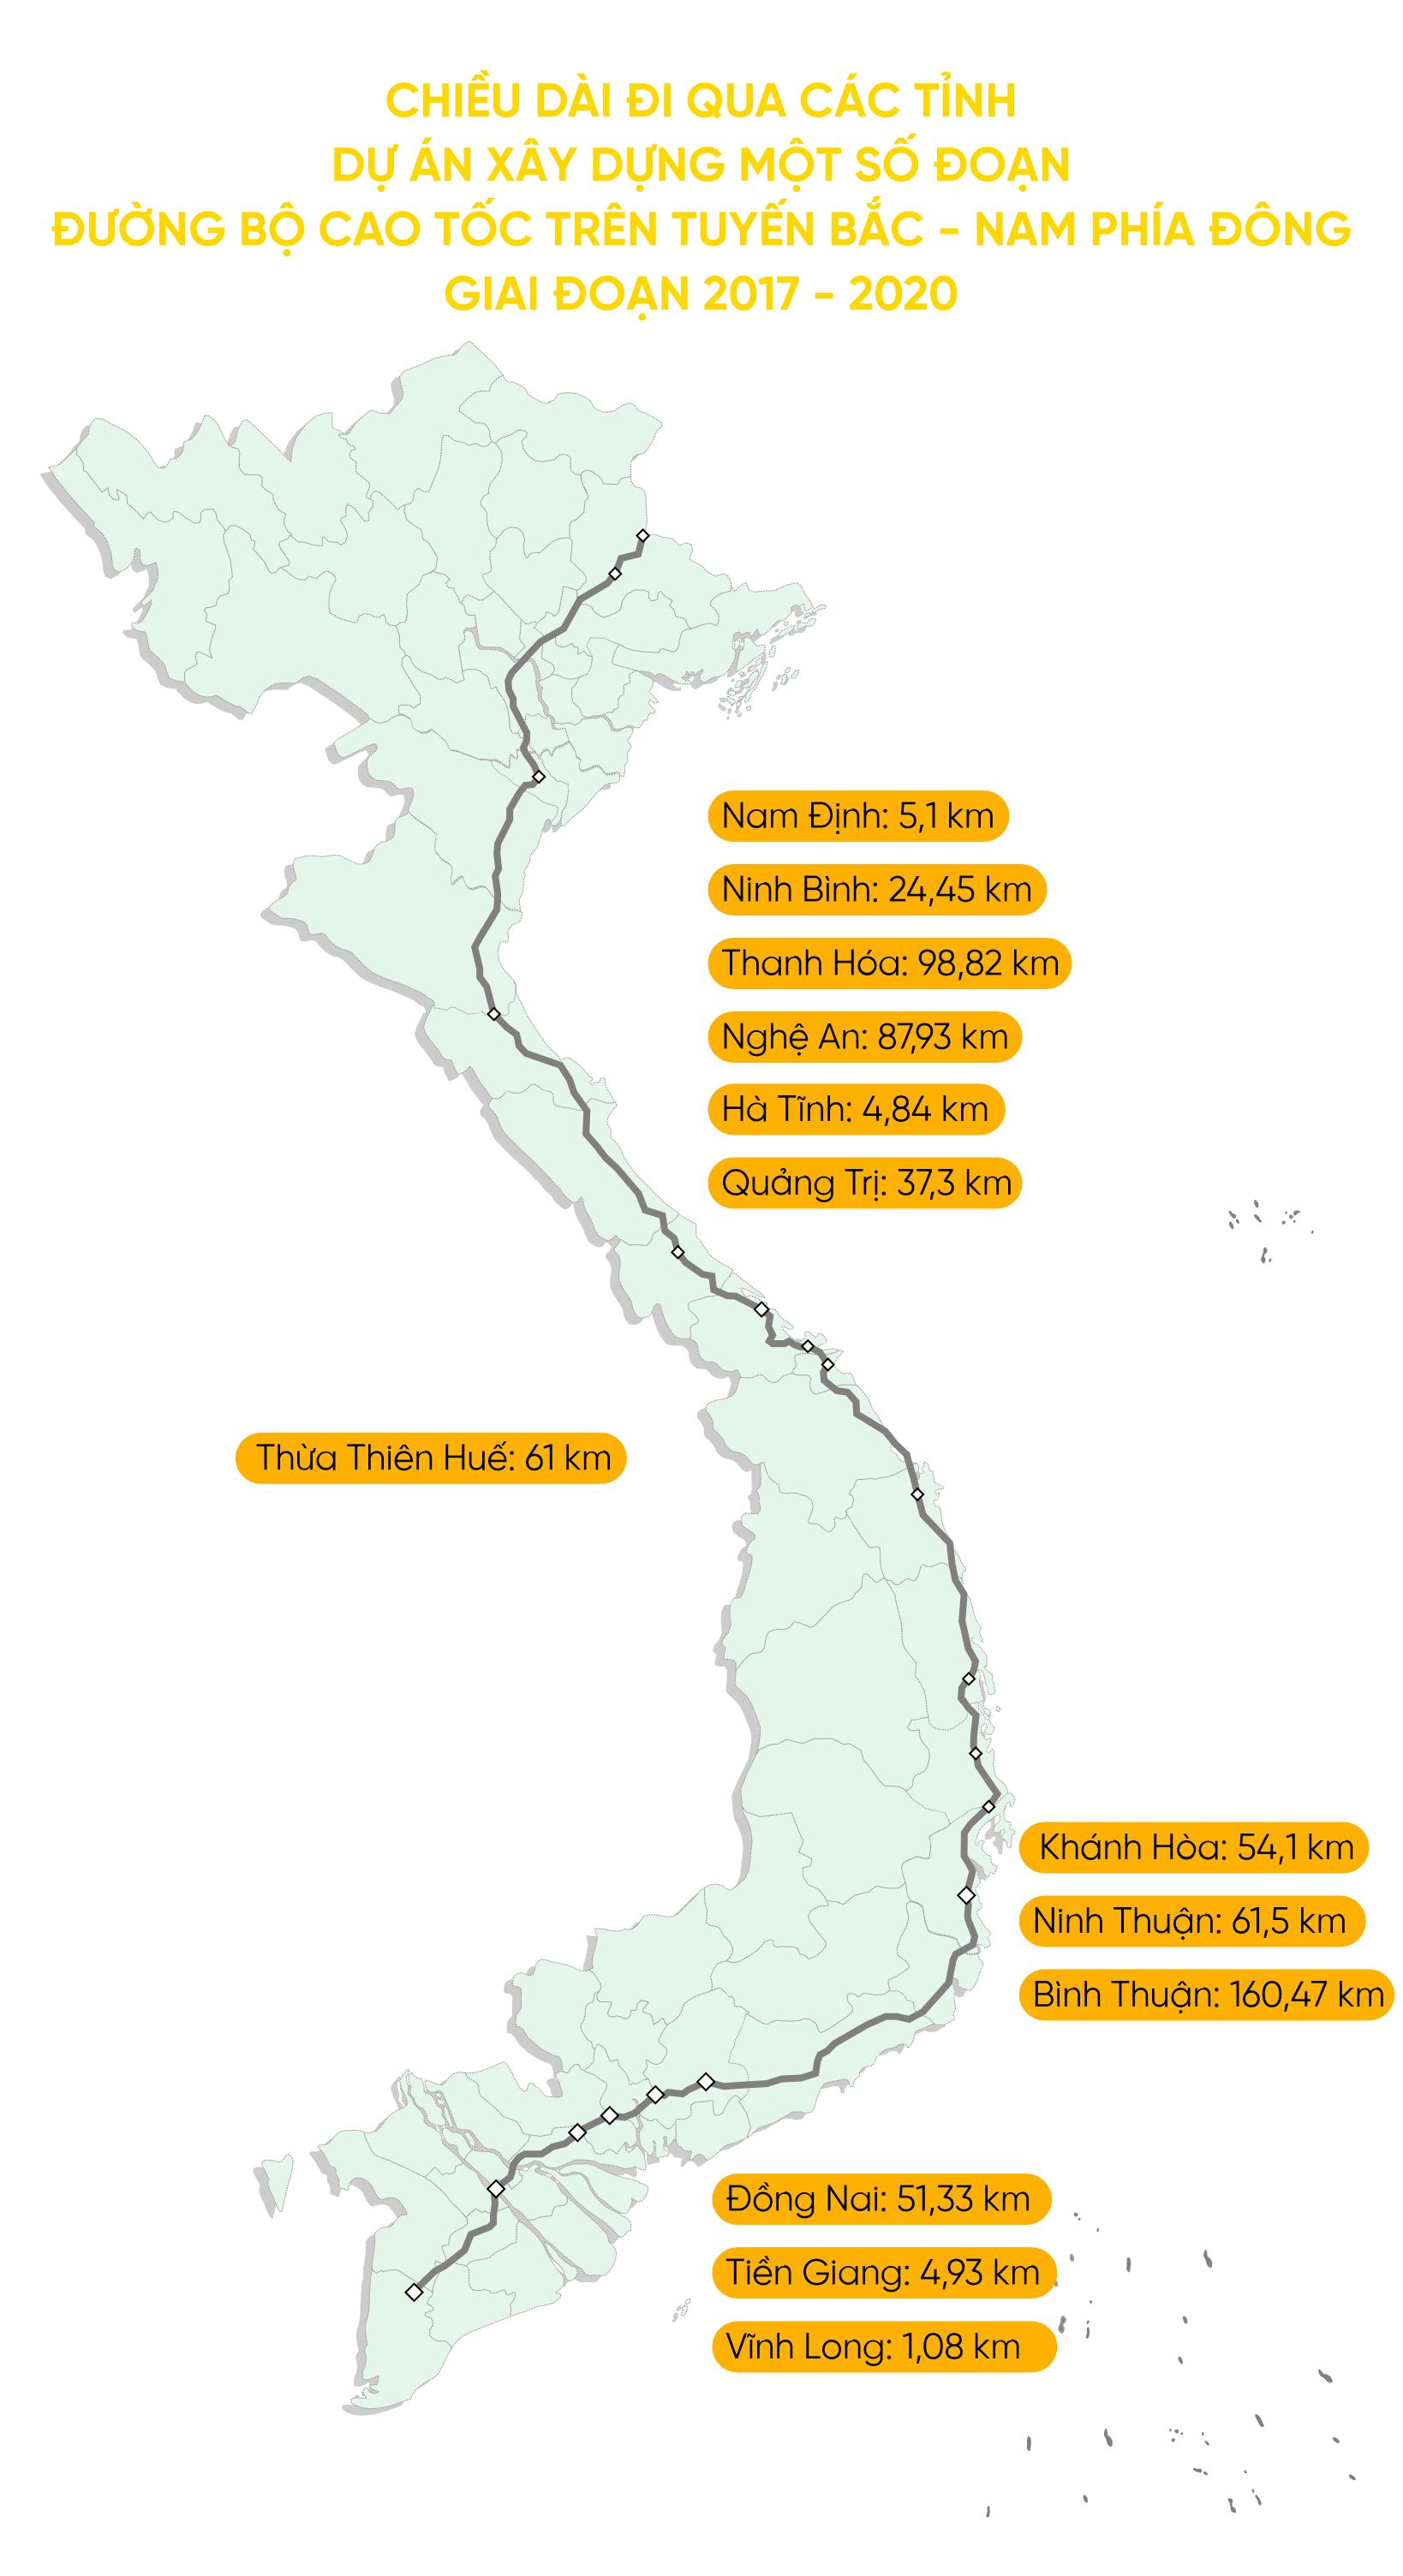 Nếu bạn đang lên kế hoạch cho kỳ nghỉ tới Việt Nam vào năm 2024, hãy xem qua bản đồ cao tốc Bắc - Nam. Với một hạ tầng giao thông hiện đại và các tuyến đường thông suốt khắp đất nước, bạn có thể di chuyển từ Bắc vào Nam một cách nhanh chóng và an toàn nhất.